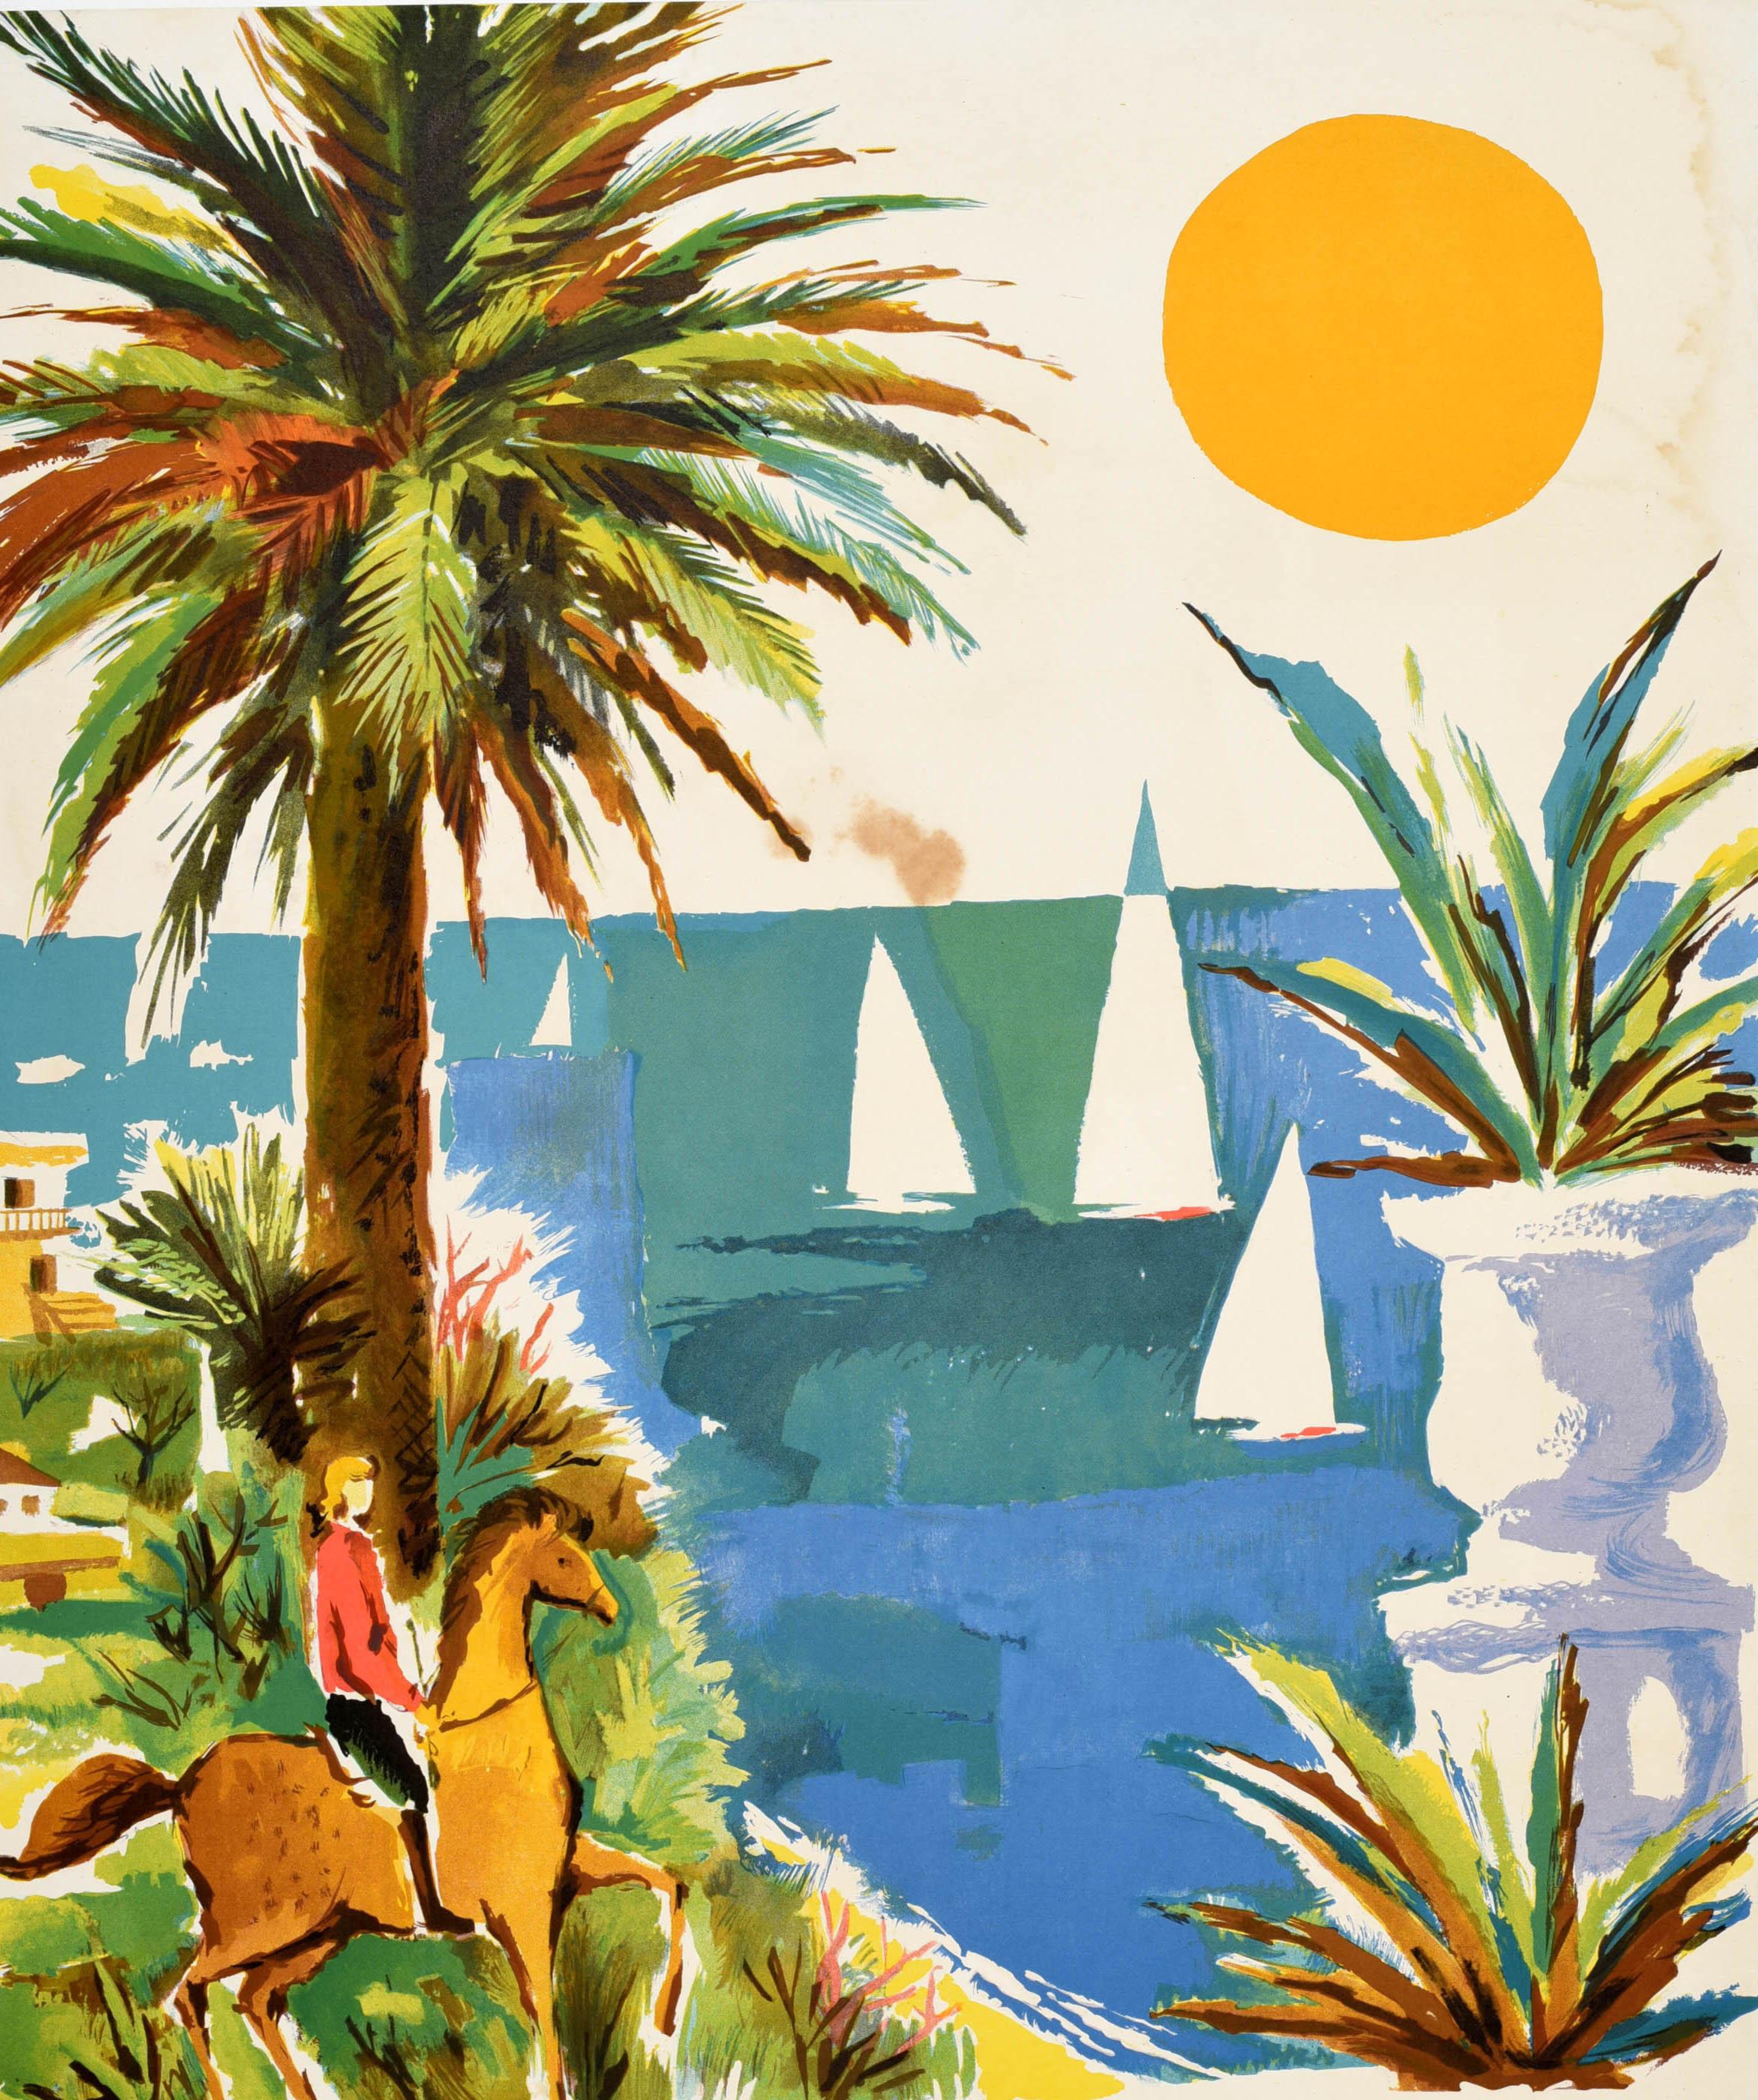 Affiche de voyage originale vintage - Estoril Portugal Vacaciones al sol / Vacances au soleil - présentant une illustration colorée de la côte avec une dame chevauchant un cheval près d'un palmier au premier plan, une plage de sable avec des